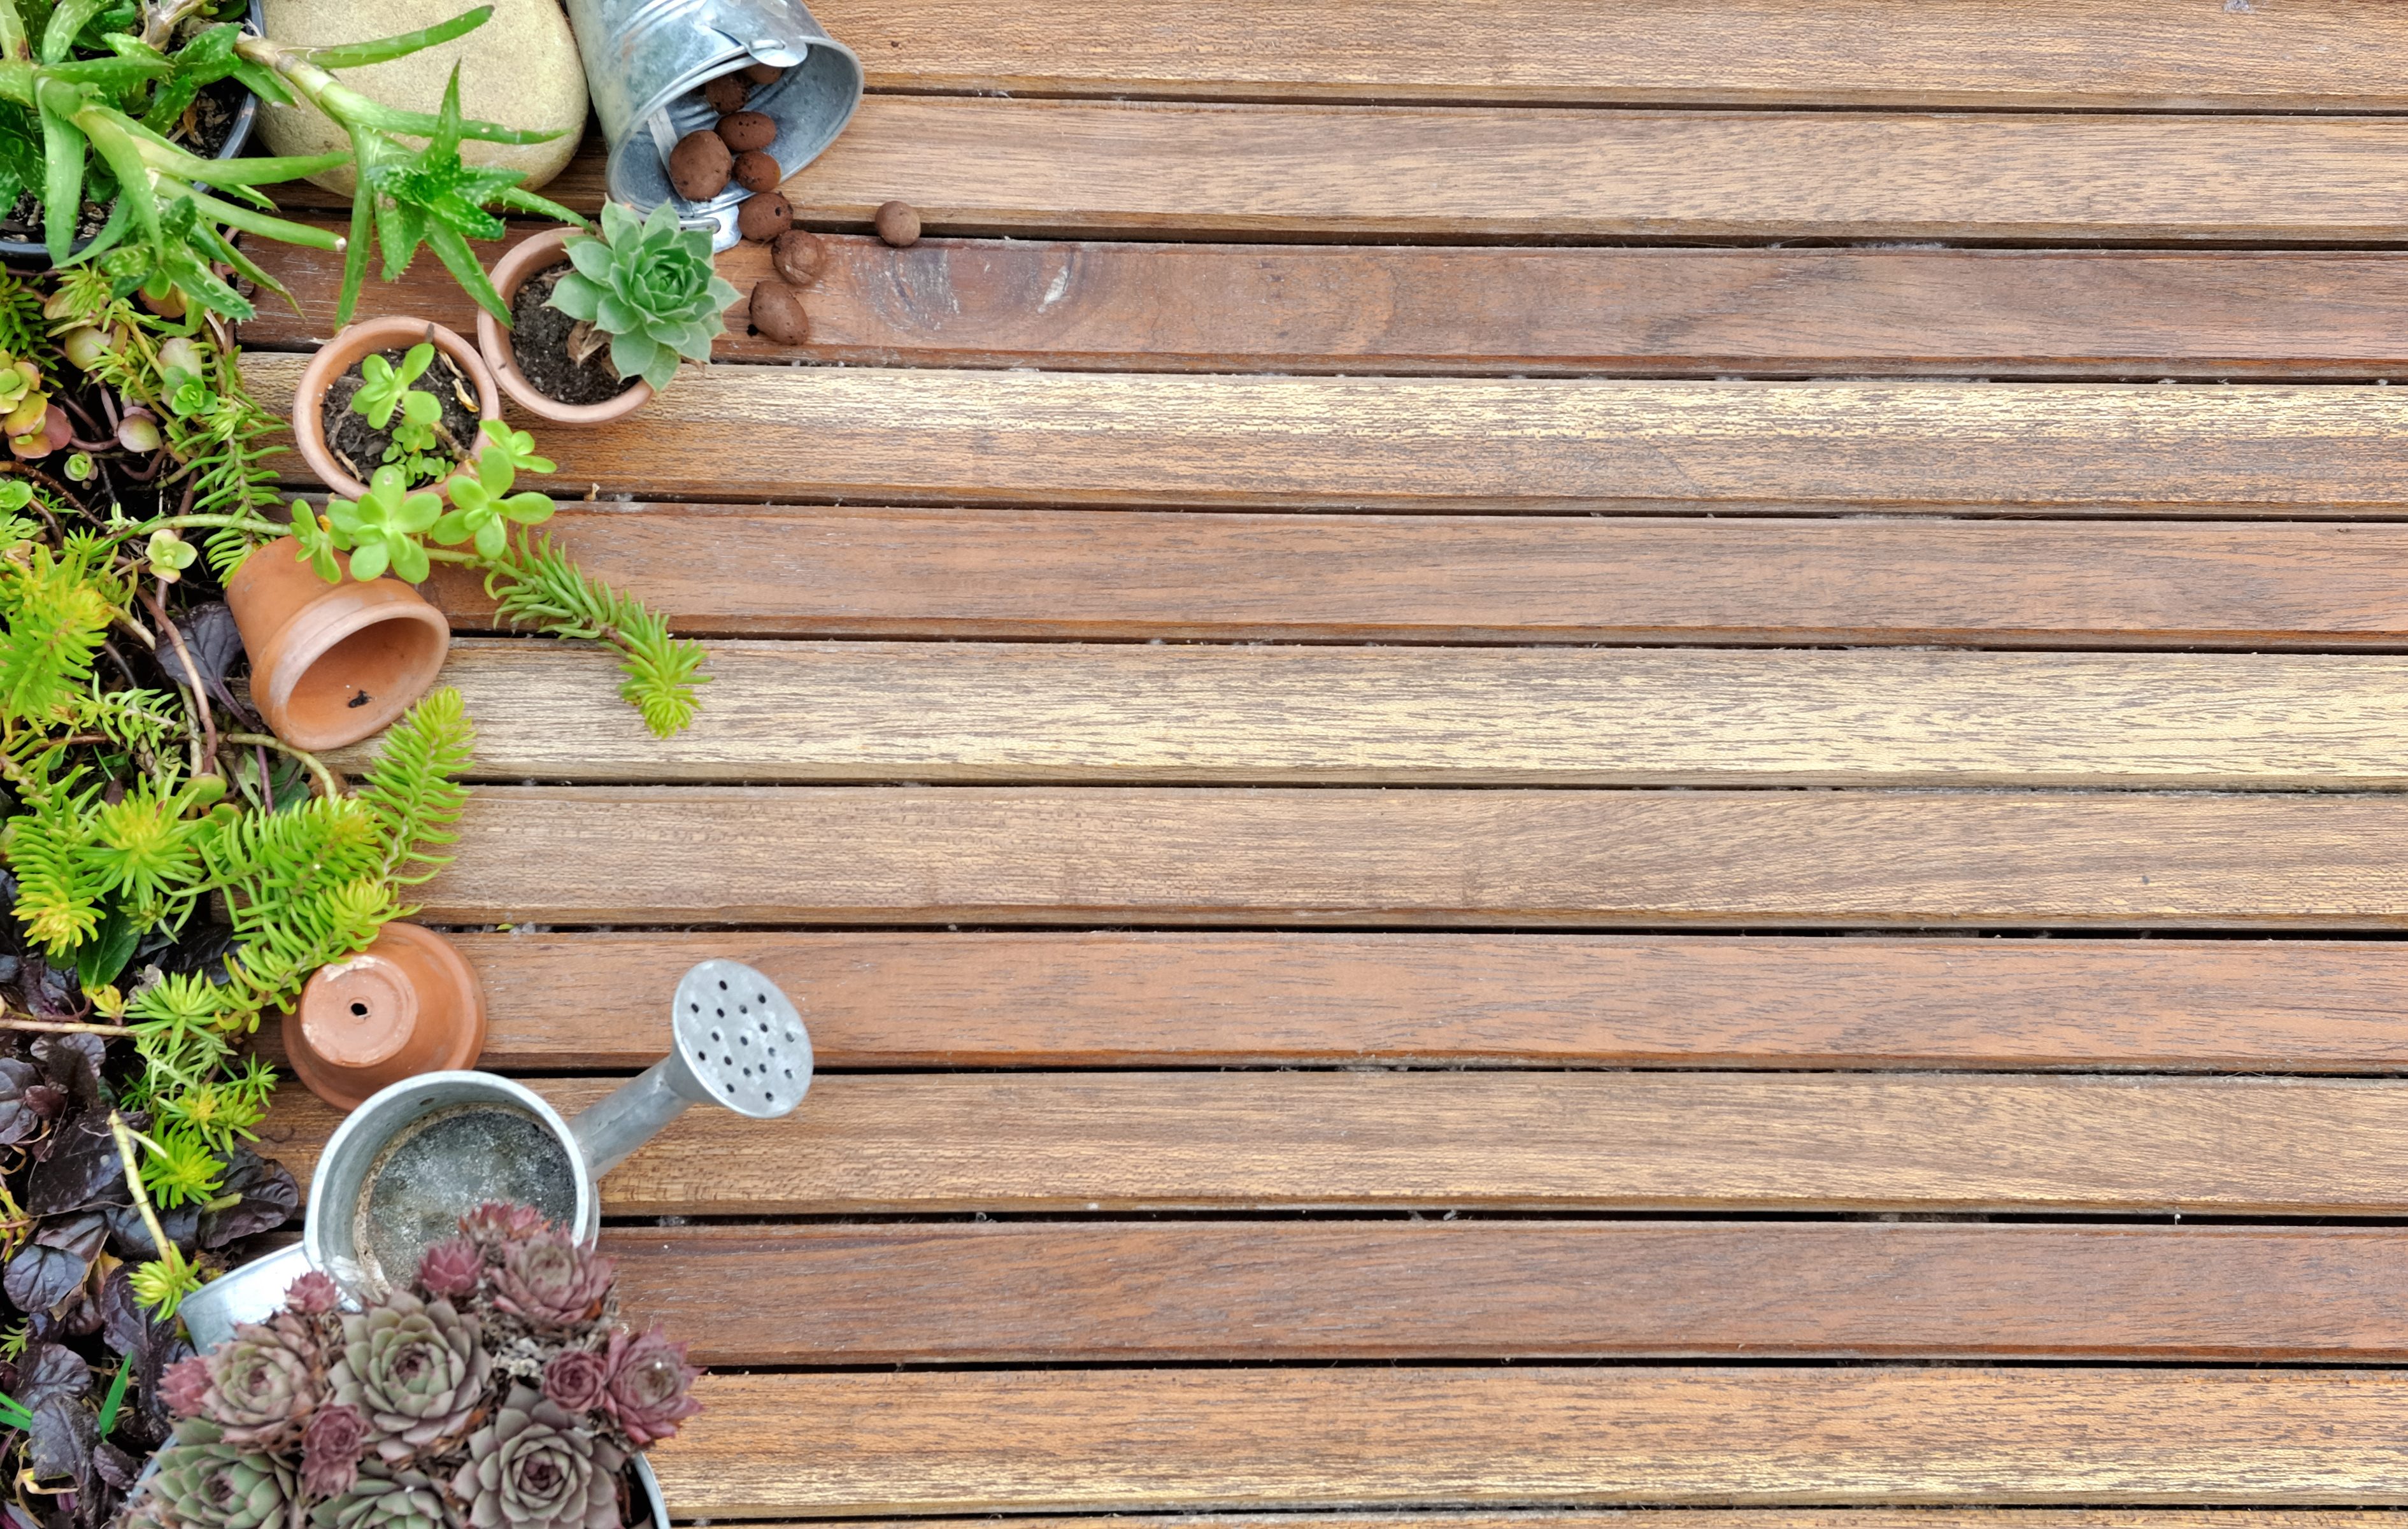 Nettoyer terrasse bois : 4 erreurs qui peuvent tout ruiner !